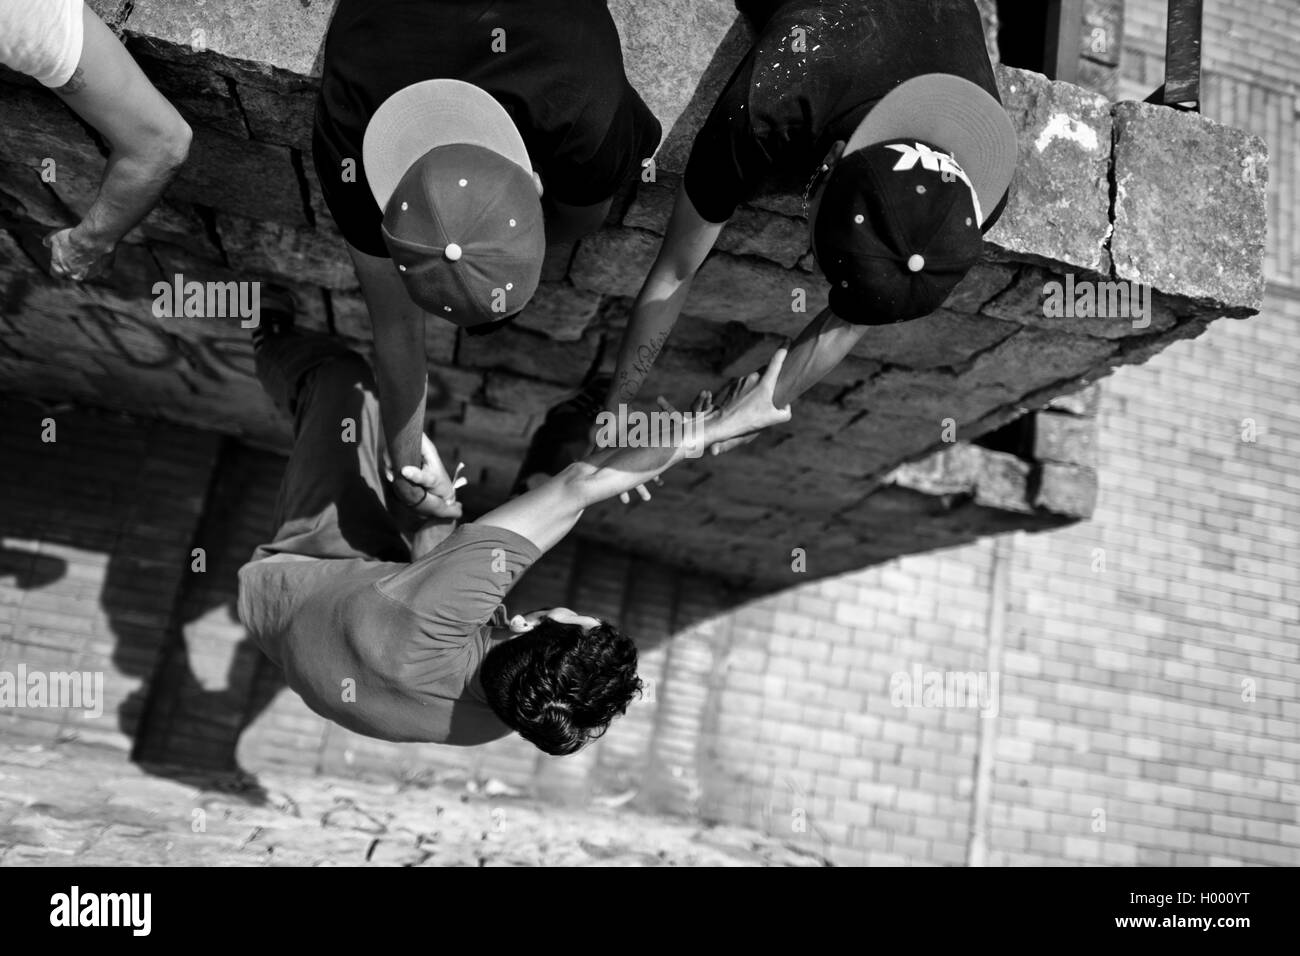 Un parkour runner, suspendu à ses copains' hands, grimpe sur le mur pendant une session de formation à Bogotá, Colombie. Banque D'Images